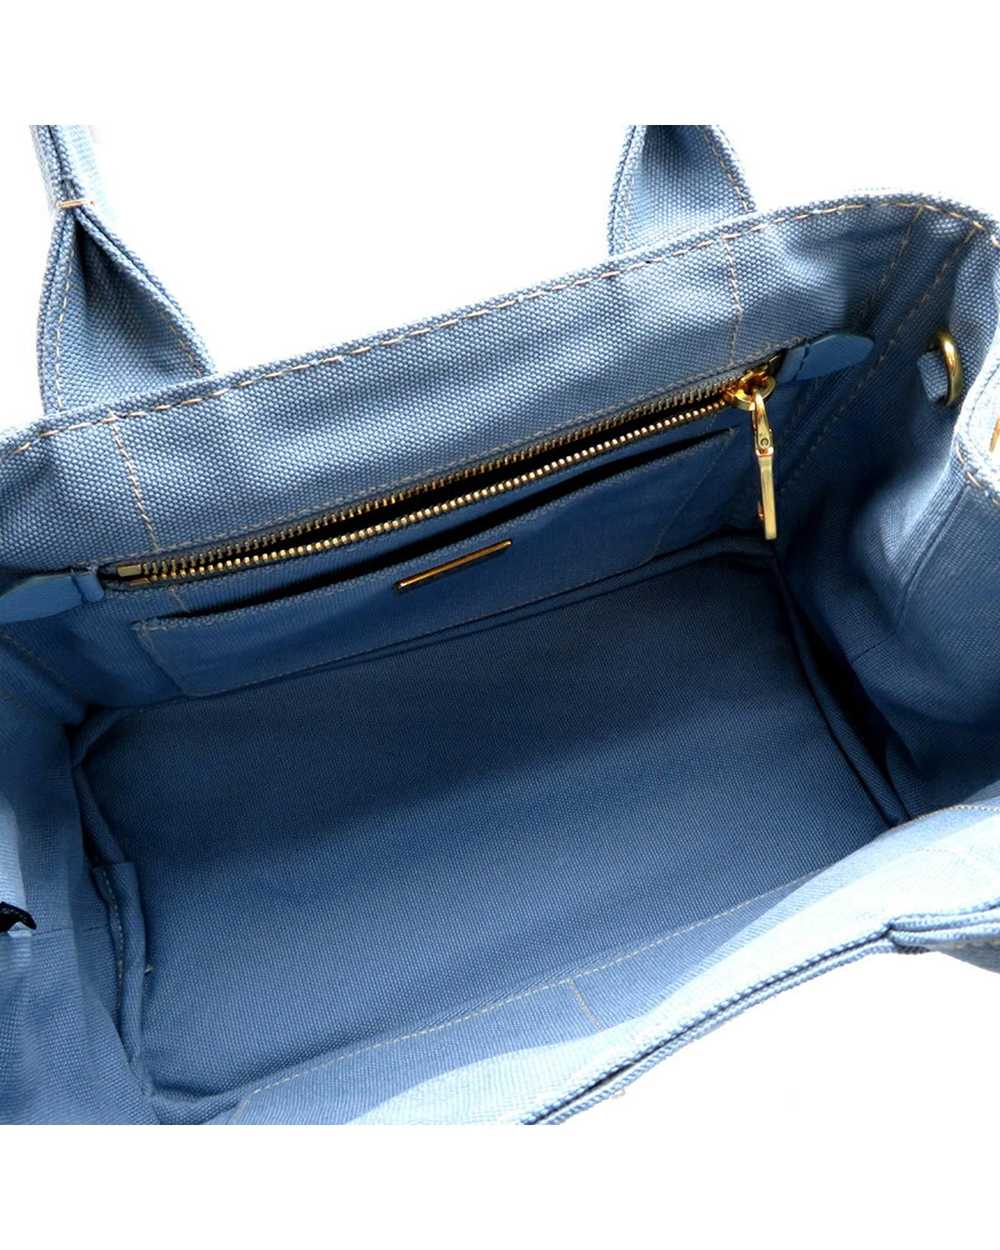 Prada Blue Canapa Logo Handbag in Excellent Condi… - image 6